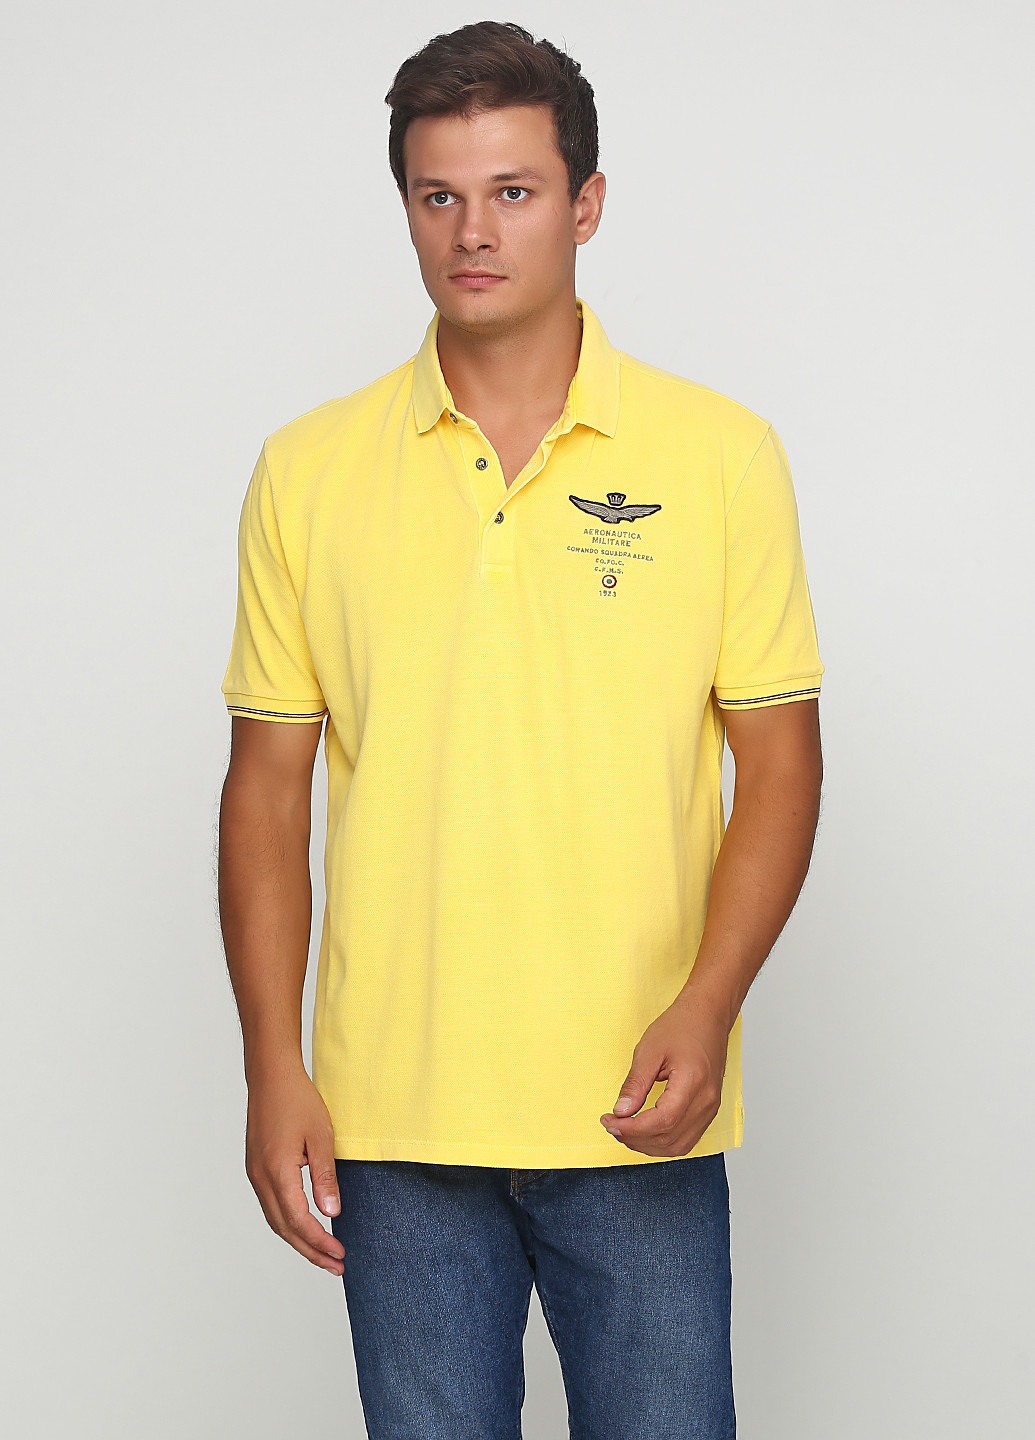 Желтая футболка-поло для мужчин Aeronautica Militare однотонная